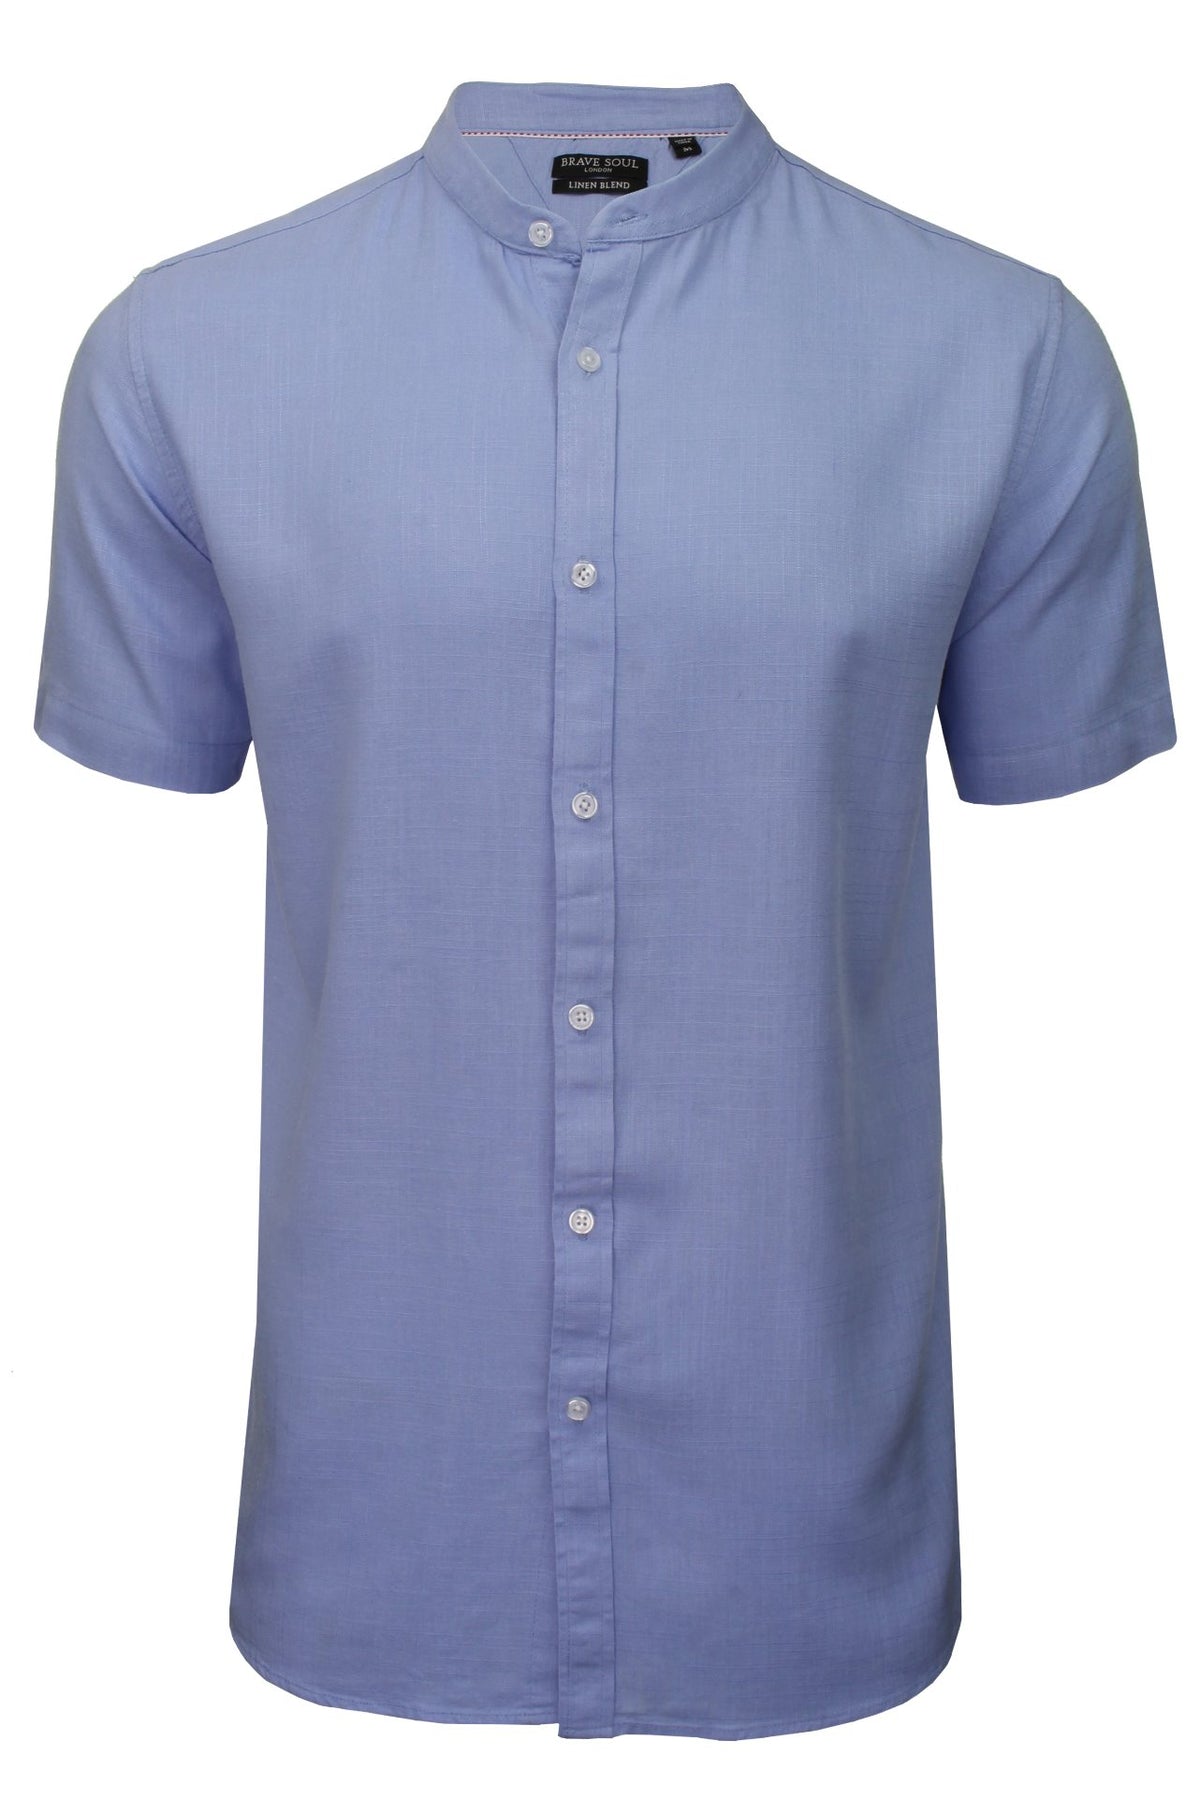 Brave Soul Mens 'Anglo' Linen Mix Grandad Shirt - Short Sleeved, 01, Msh-508Anglo, Light Blue